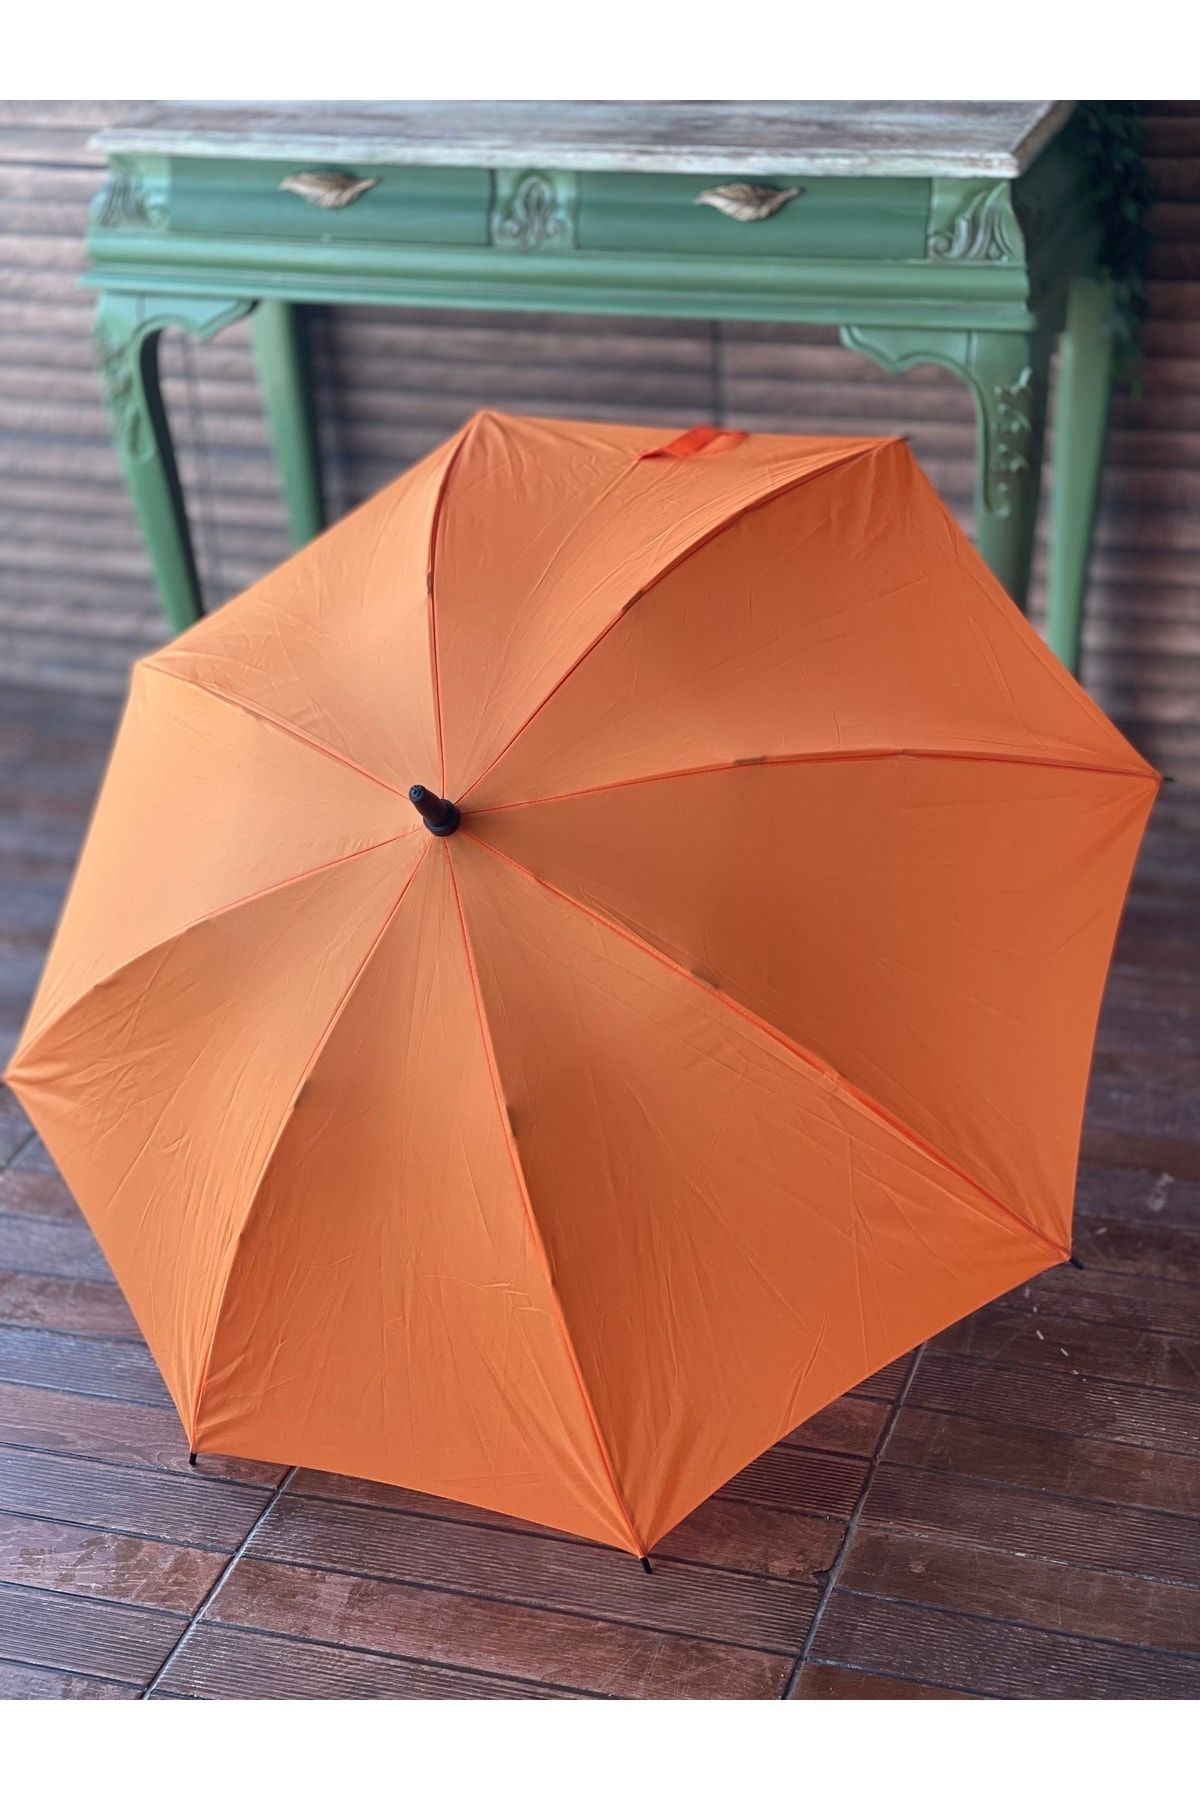 Sunlife 8 Telli Otomatik Fiberglass Baston Turuncu Renkli Yağmur Şemsiyesi